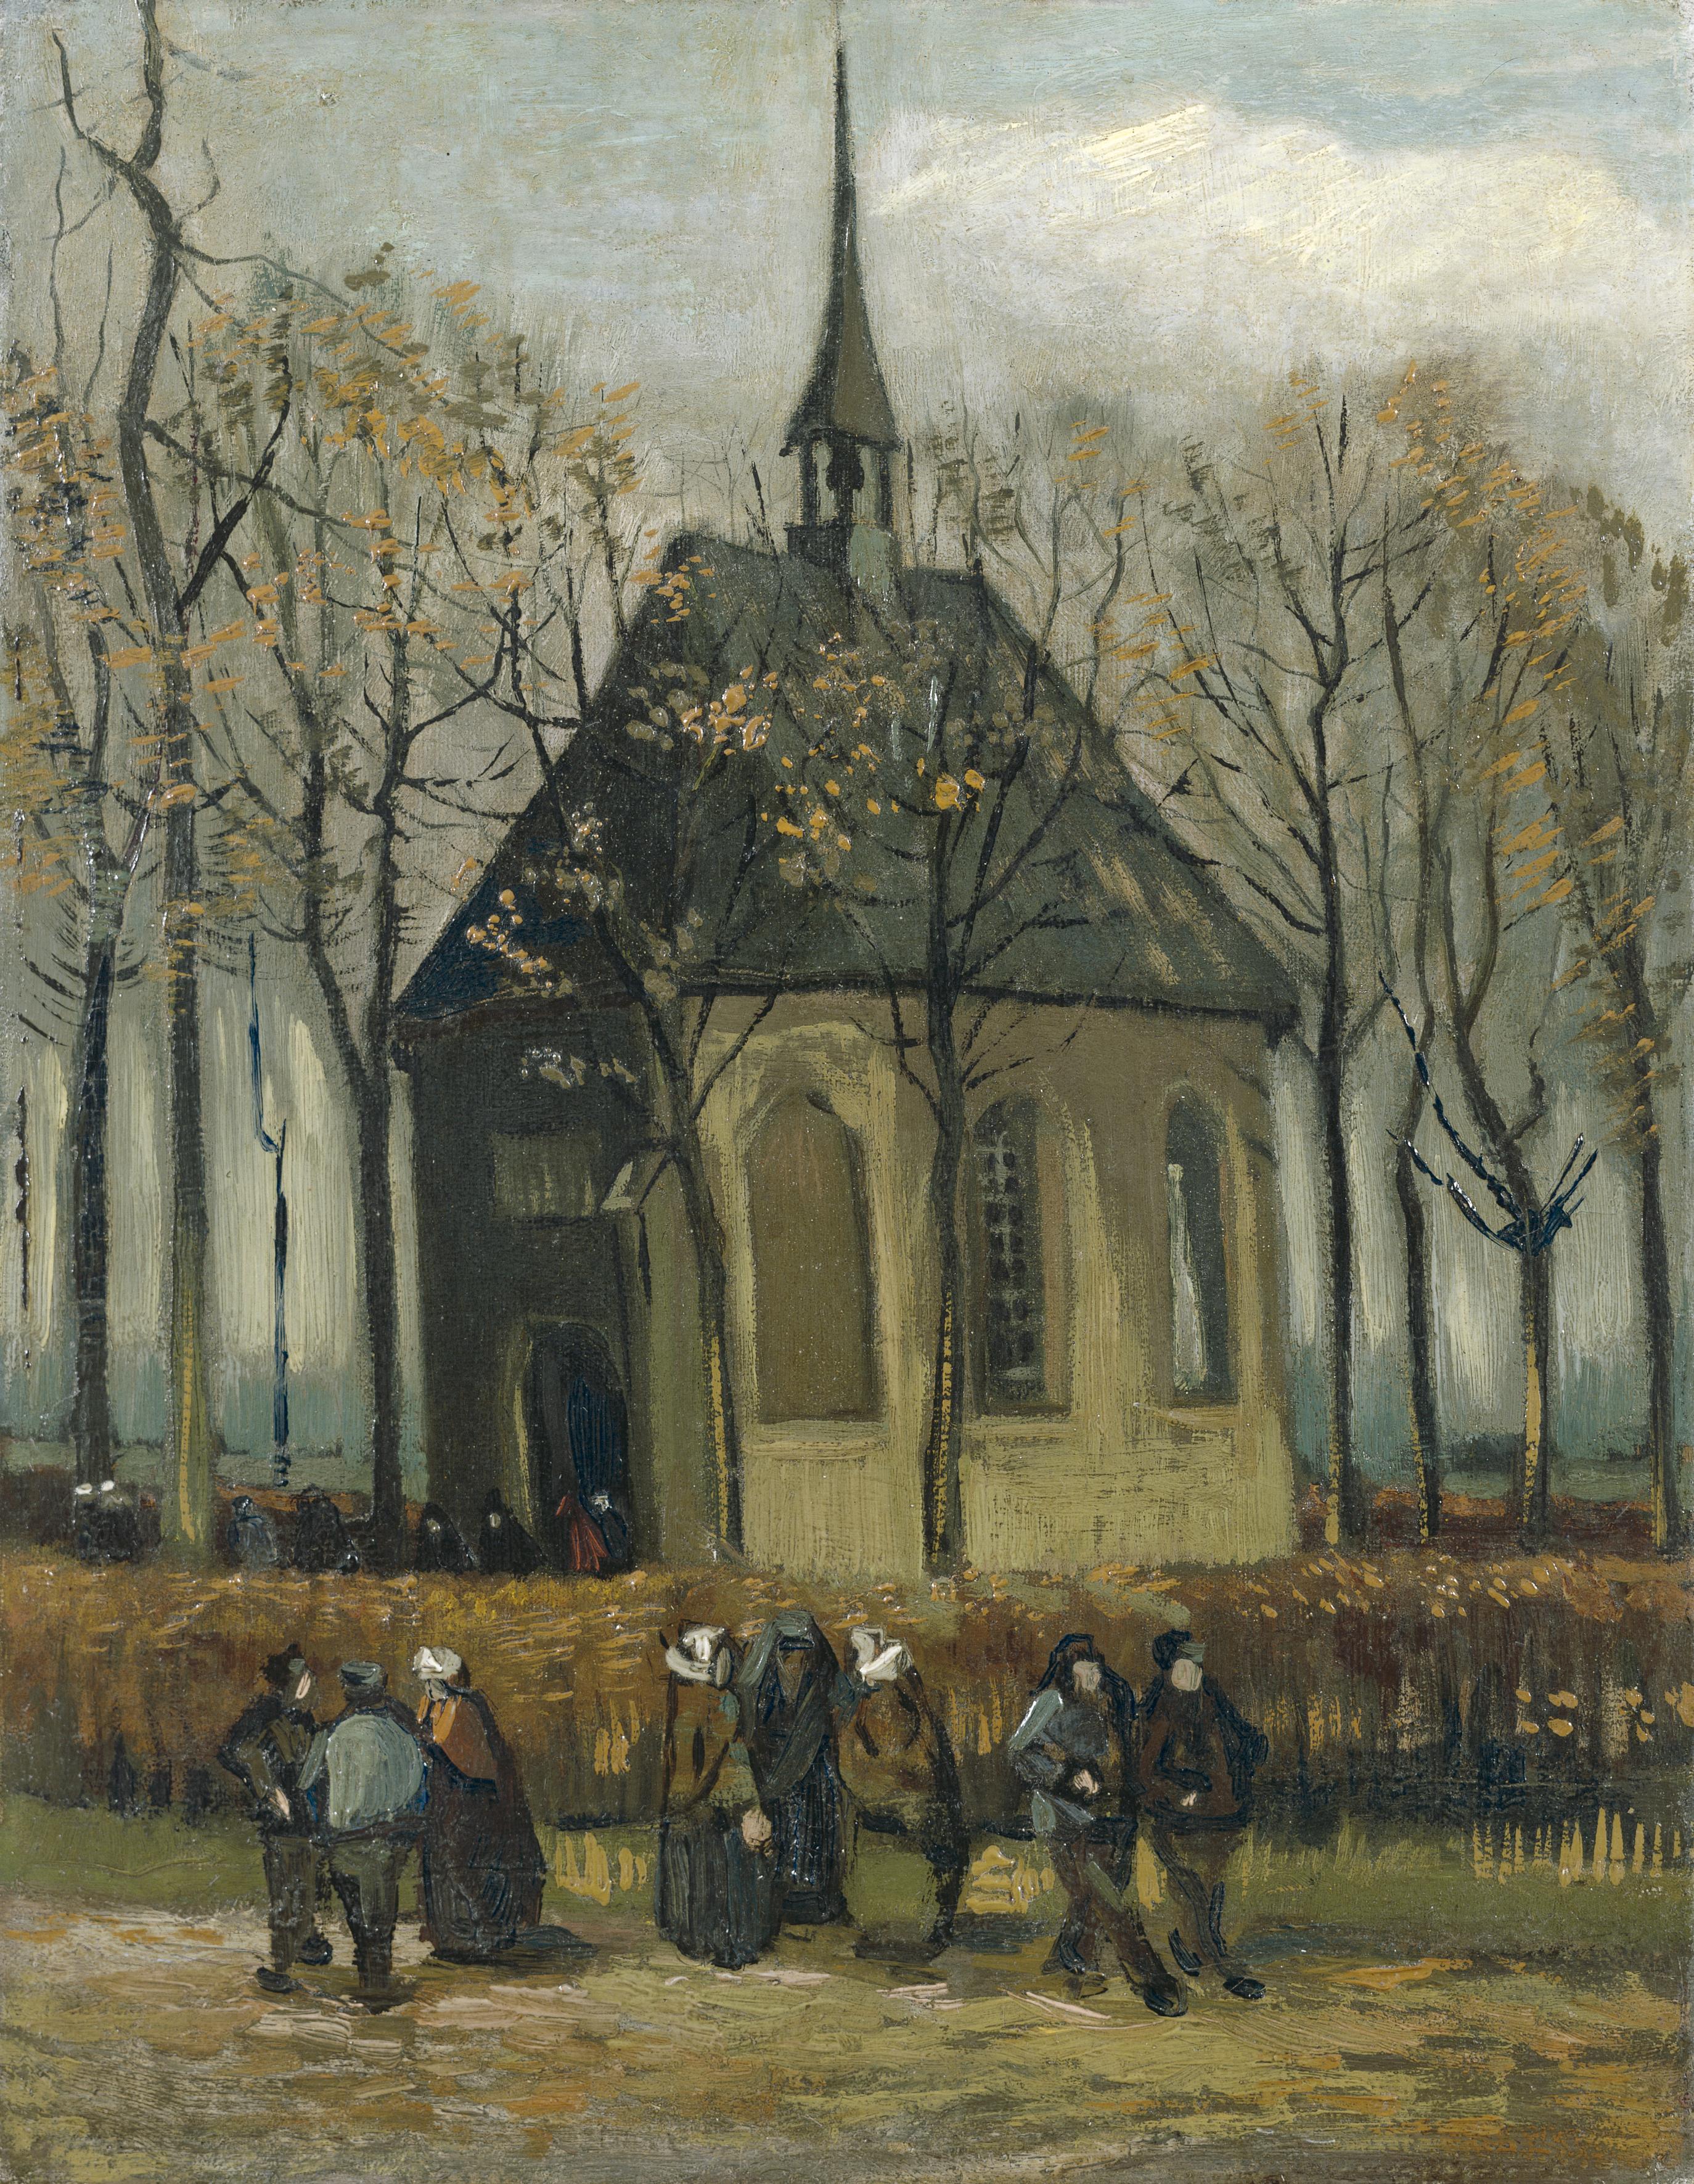 Quadri famosi-Vincent Van Gogh la passione e i suoi tormenti nei dipinti